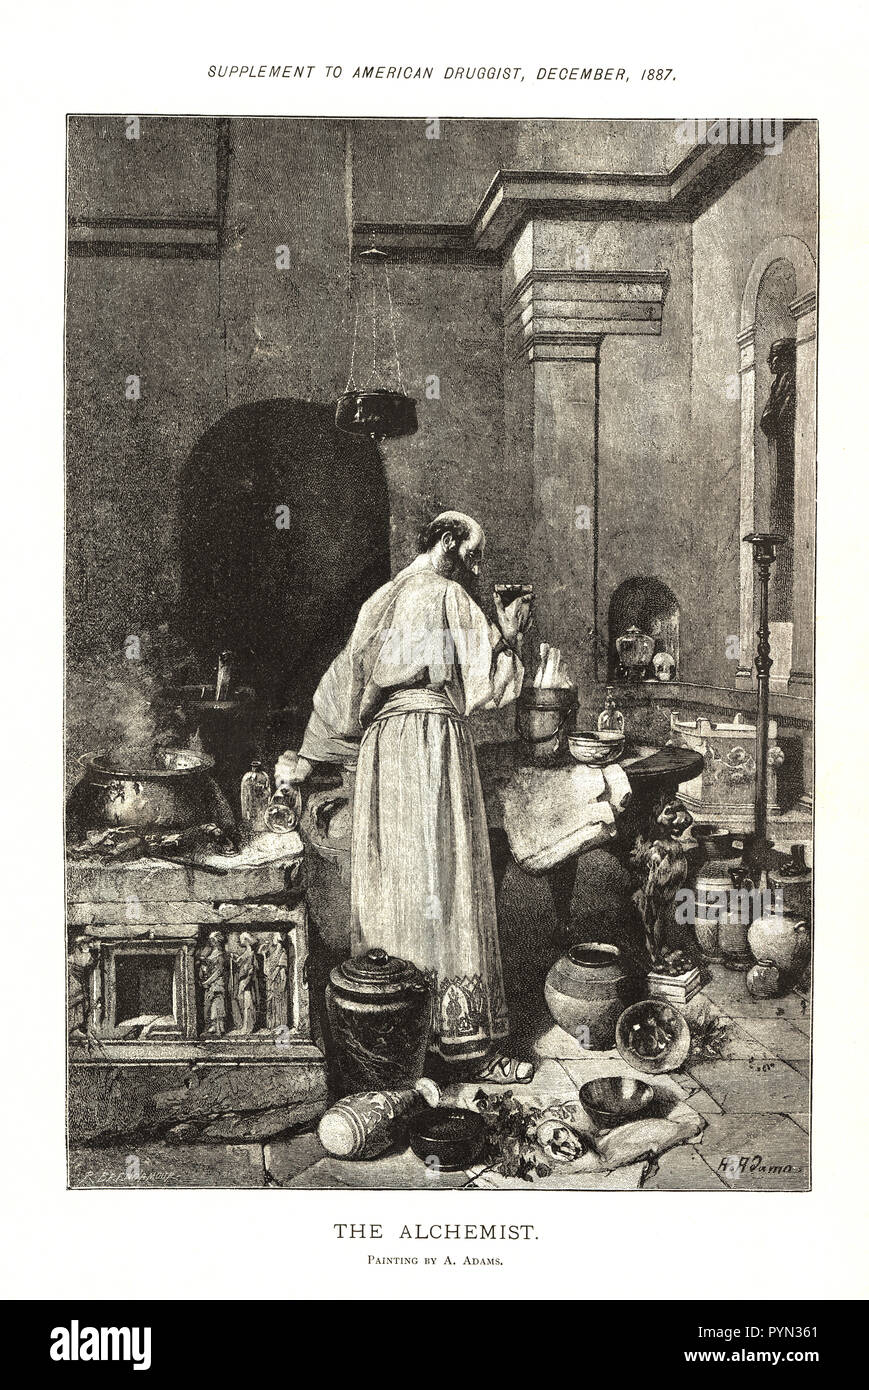 Der Alchemist, ein hoher, balding Mann in einer Robe, steht in einem Zimmer mit hohen Decken, voller Gläser, Vasen, Urnen, und andere Kuriositäten. Stockfoto